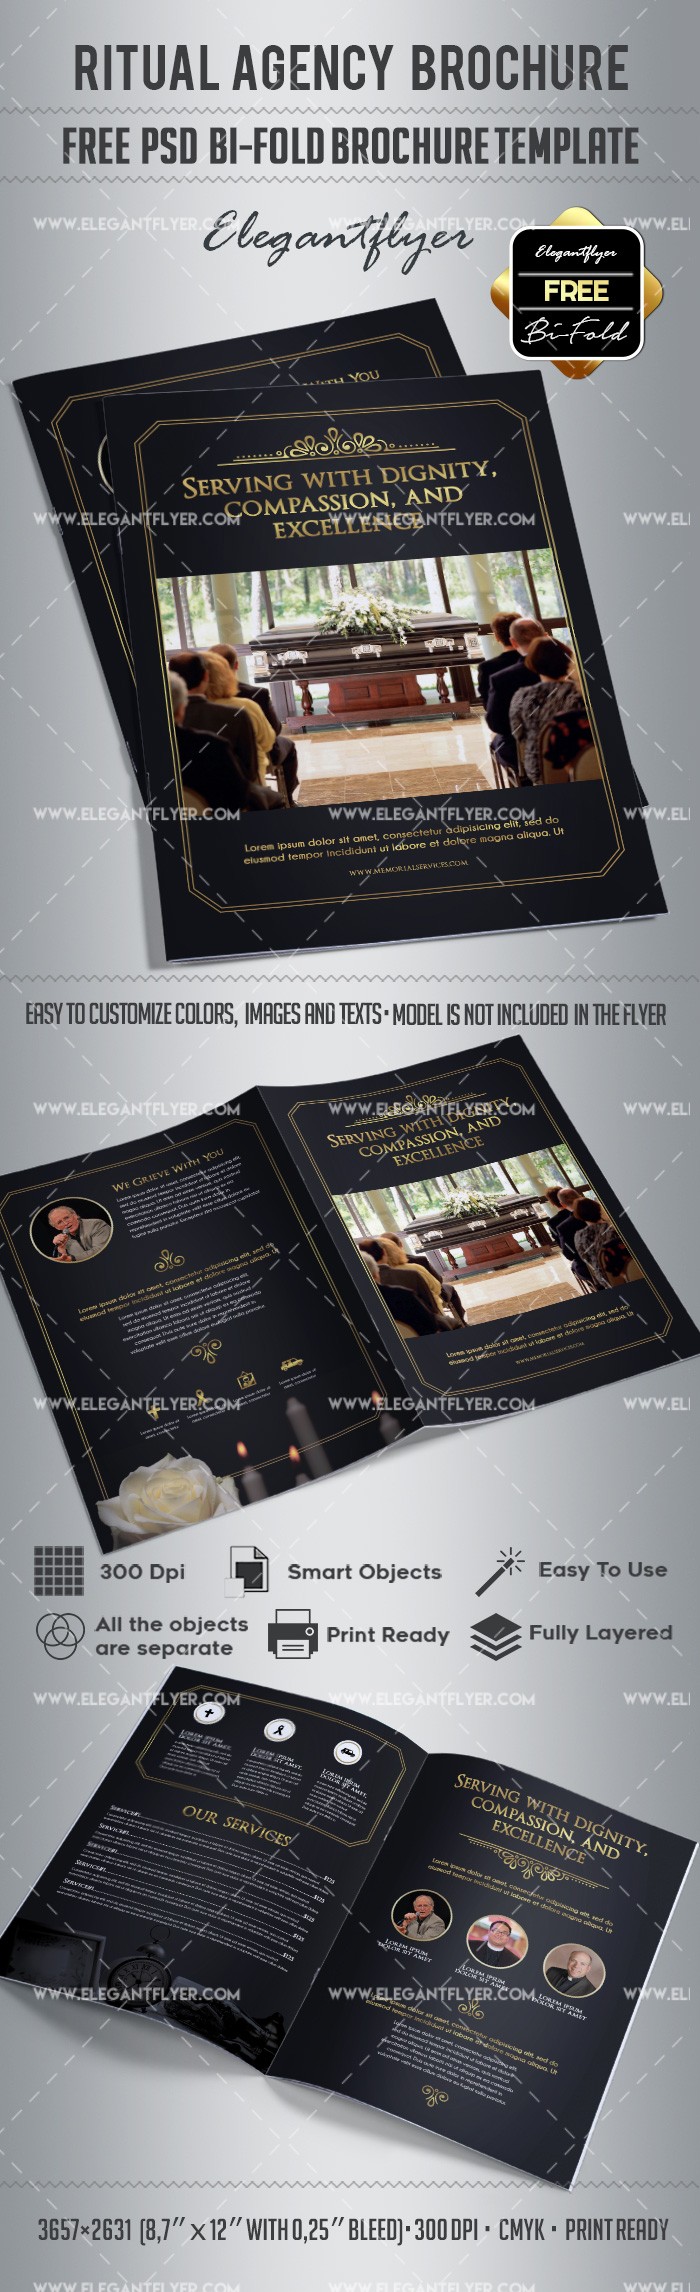 Ritual Agency Brochure by ElegantFlyer